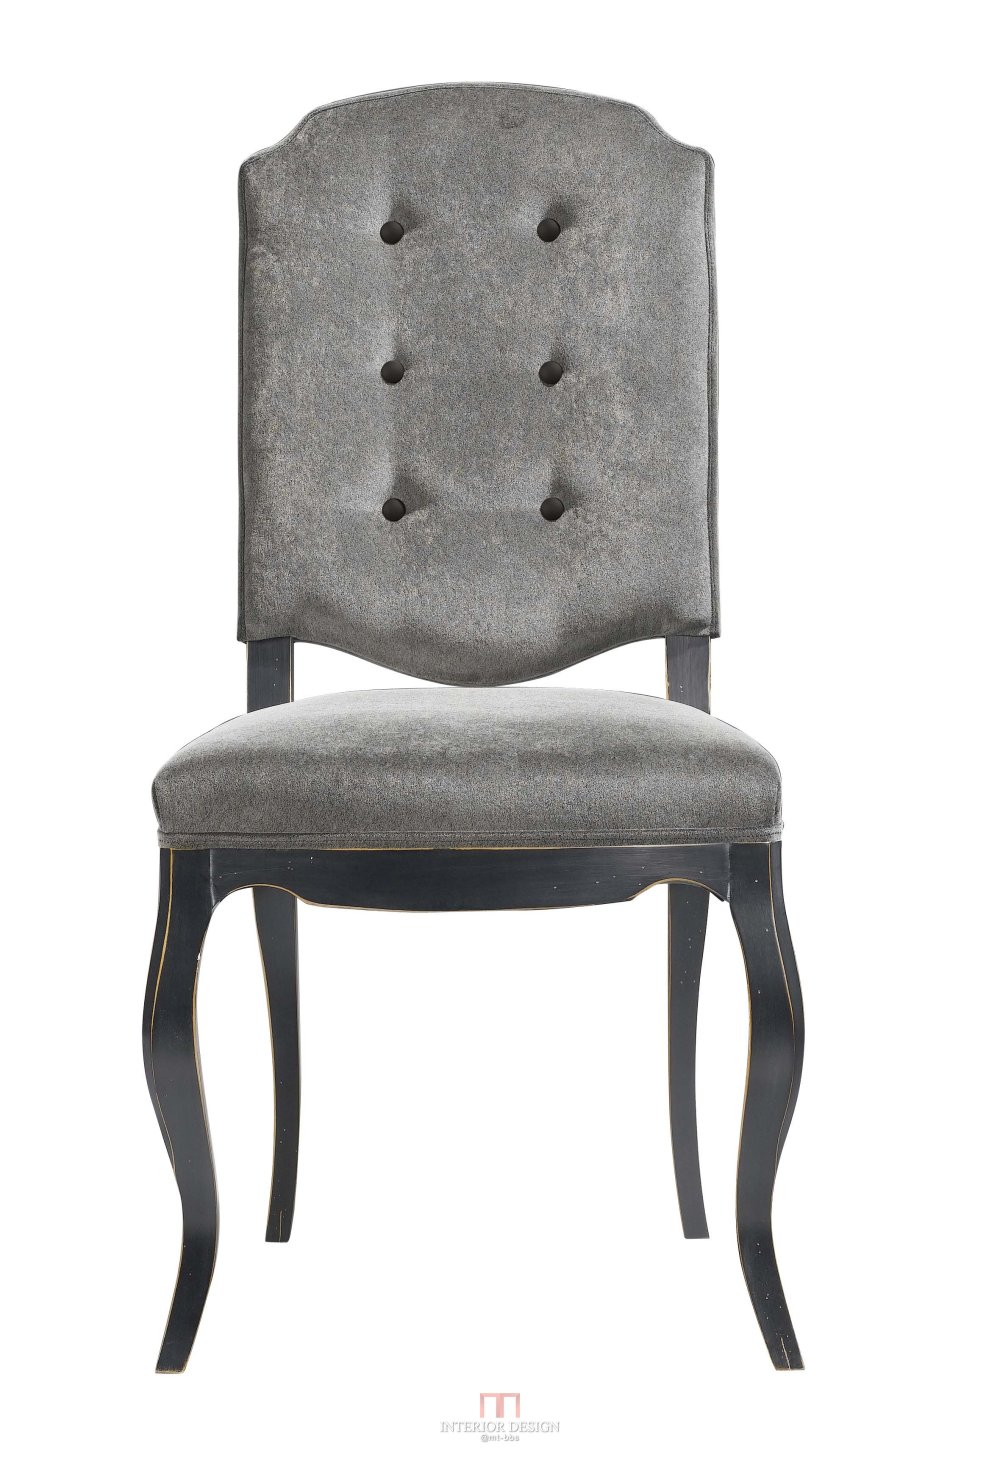 分享法国品牌Collinet 的几把椅子_044B face.jpg